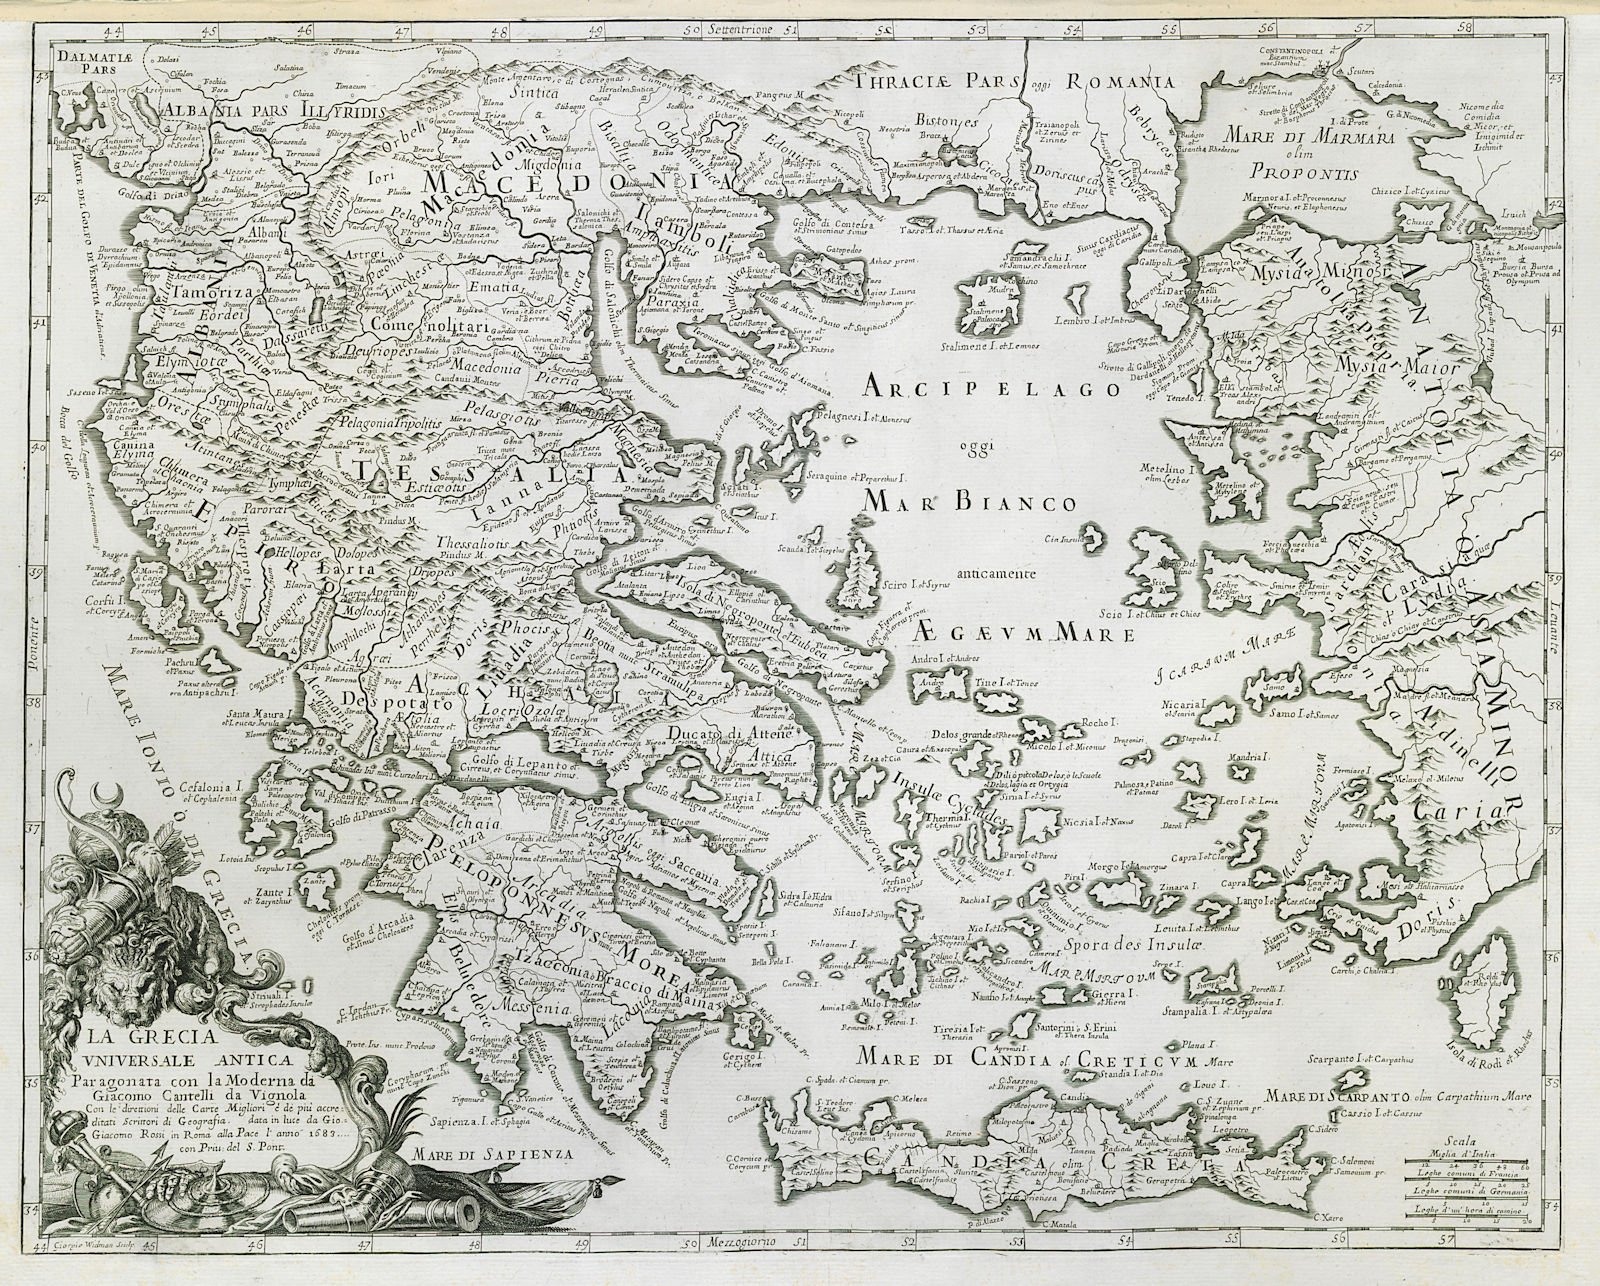 La Grecia Universale Antica. Ancient Greece & Aegean. ROSSI / CANTELLI 1683 map